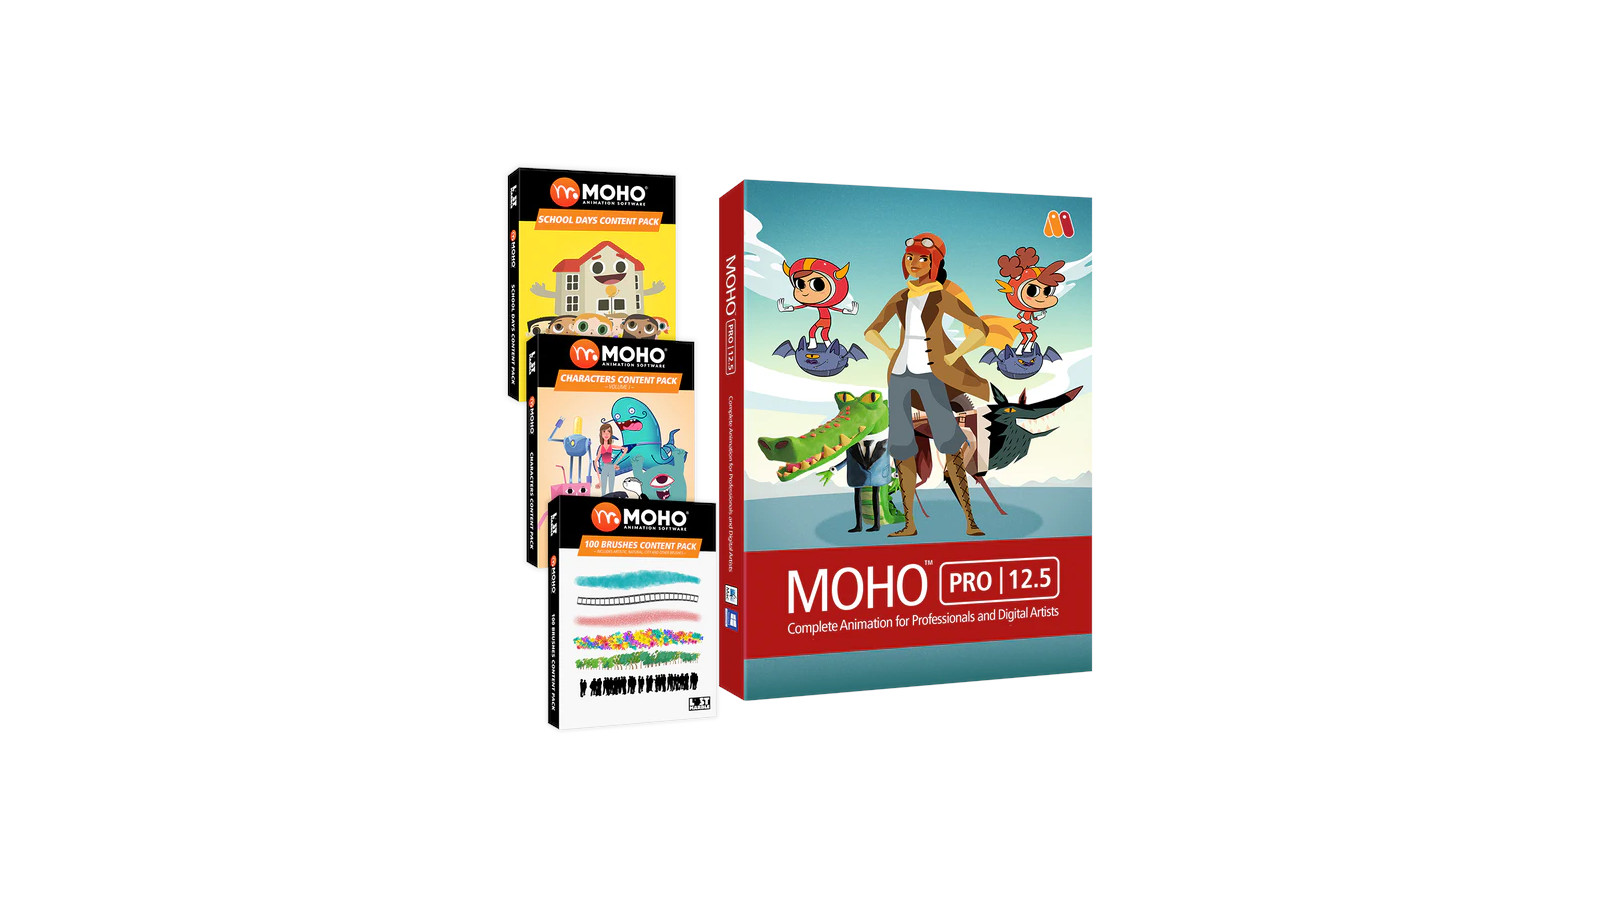 MOHO PRO 12.5 BUNDLE PC/MAC CD Key (386.84$)